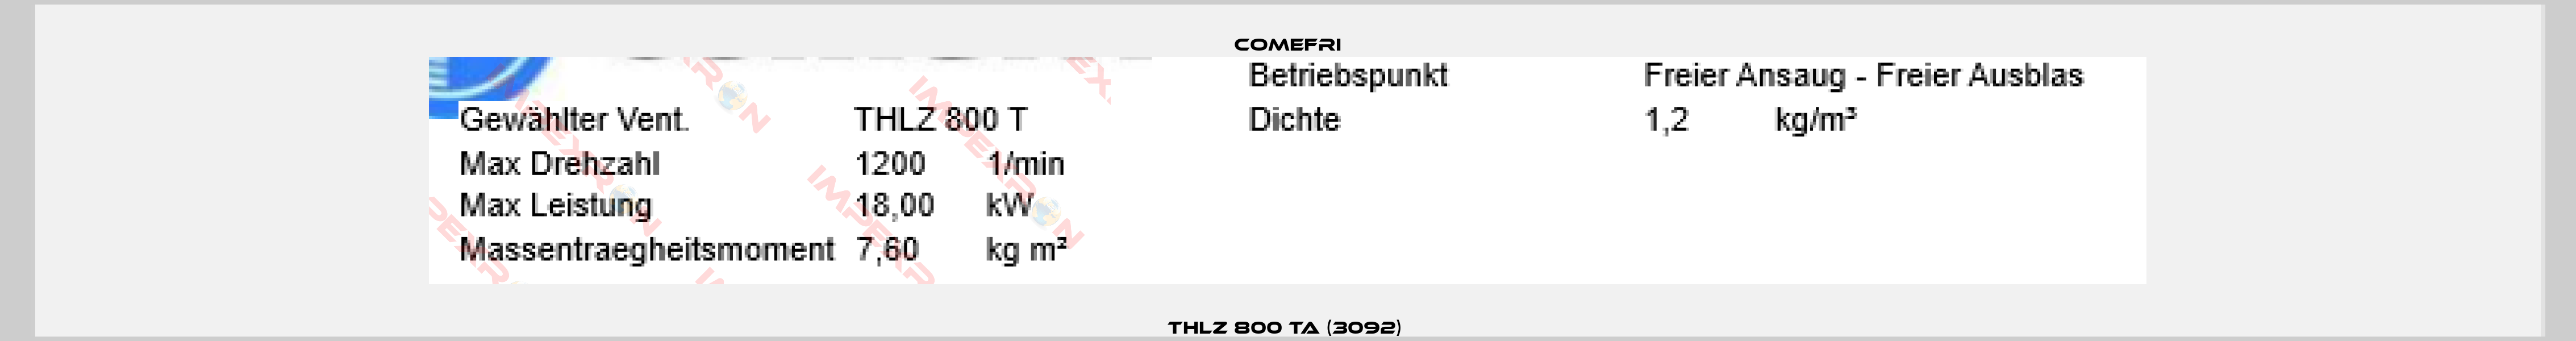 THLZ 800 TA (3092) -6